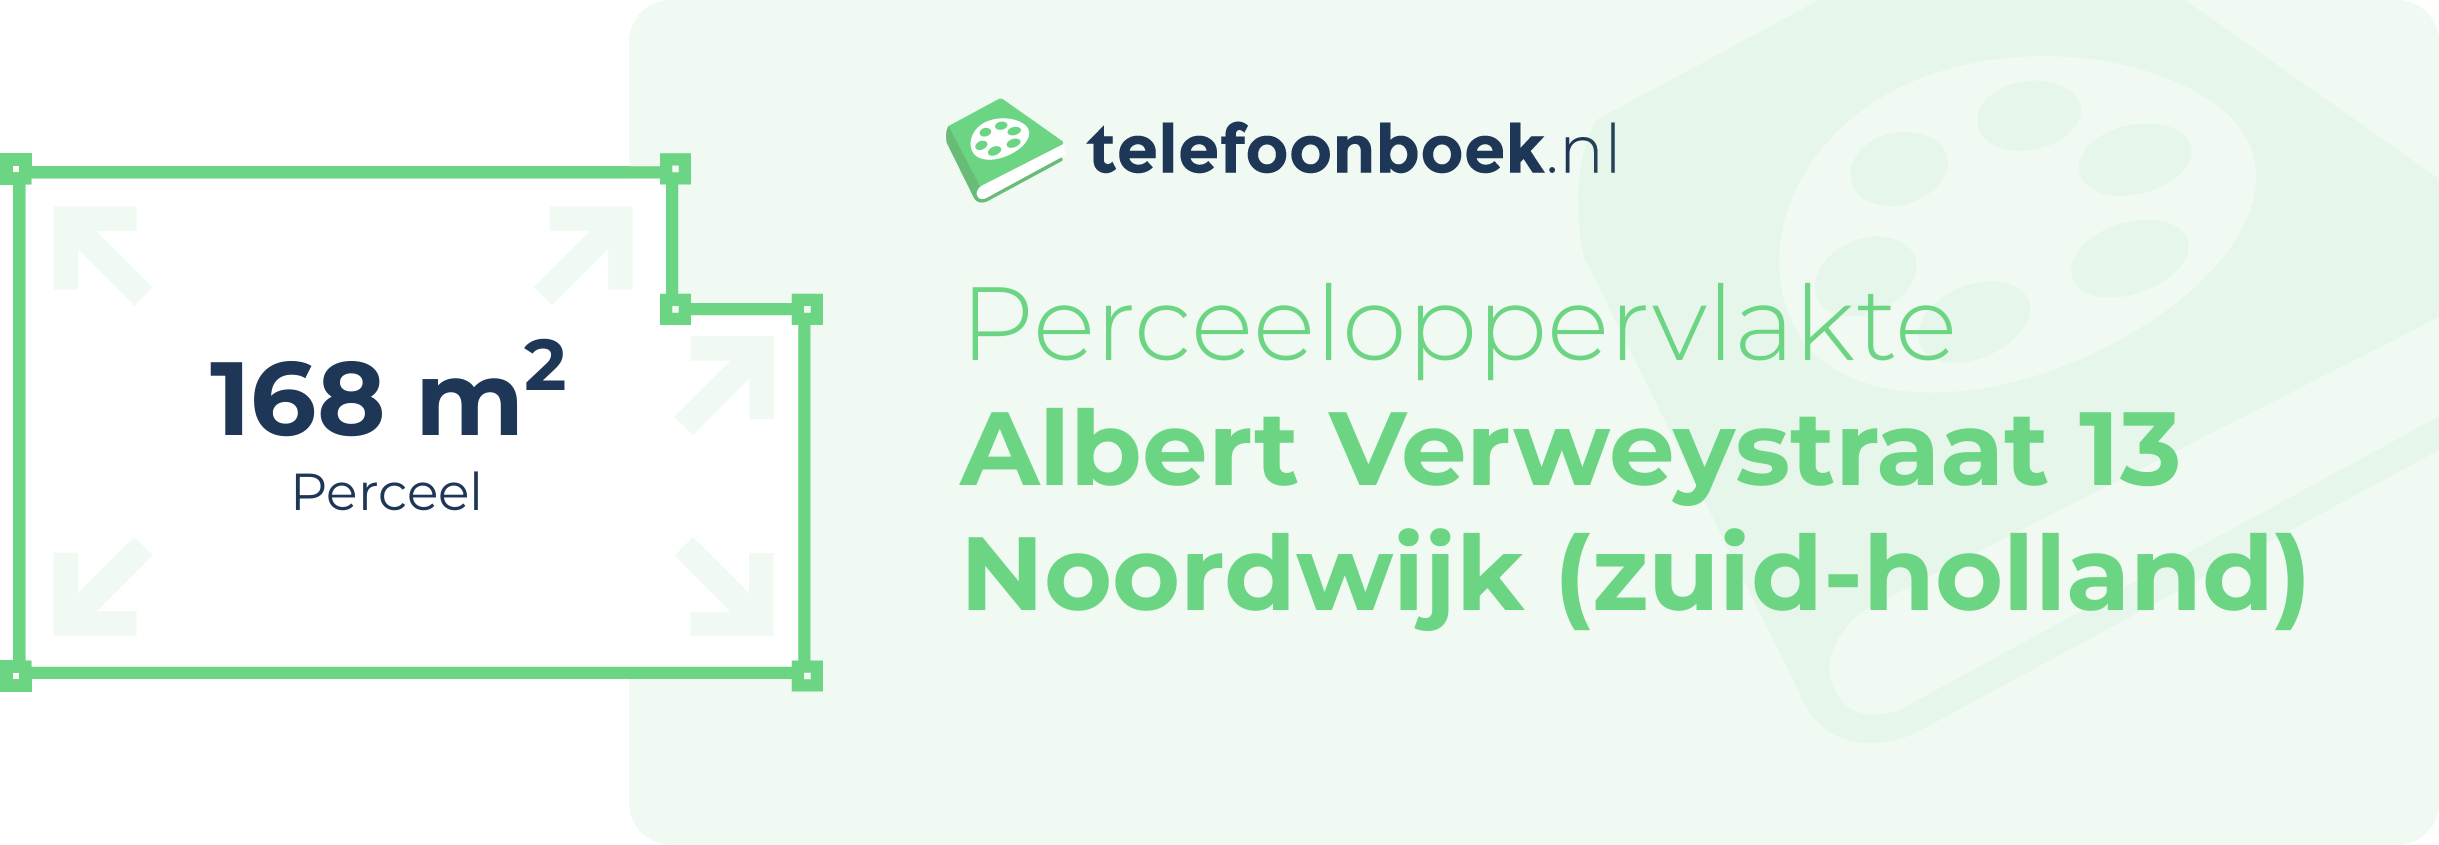 Perceeloppervlakte Albert Verweystraat 13 Noordwijk (Zuid-Holland)